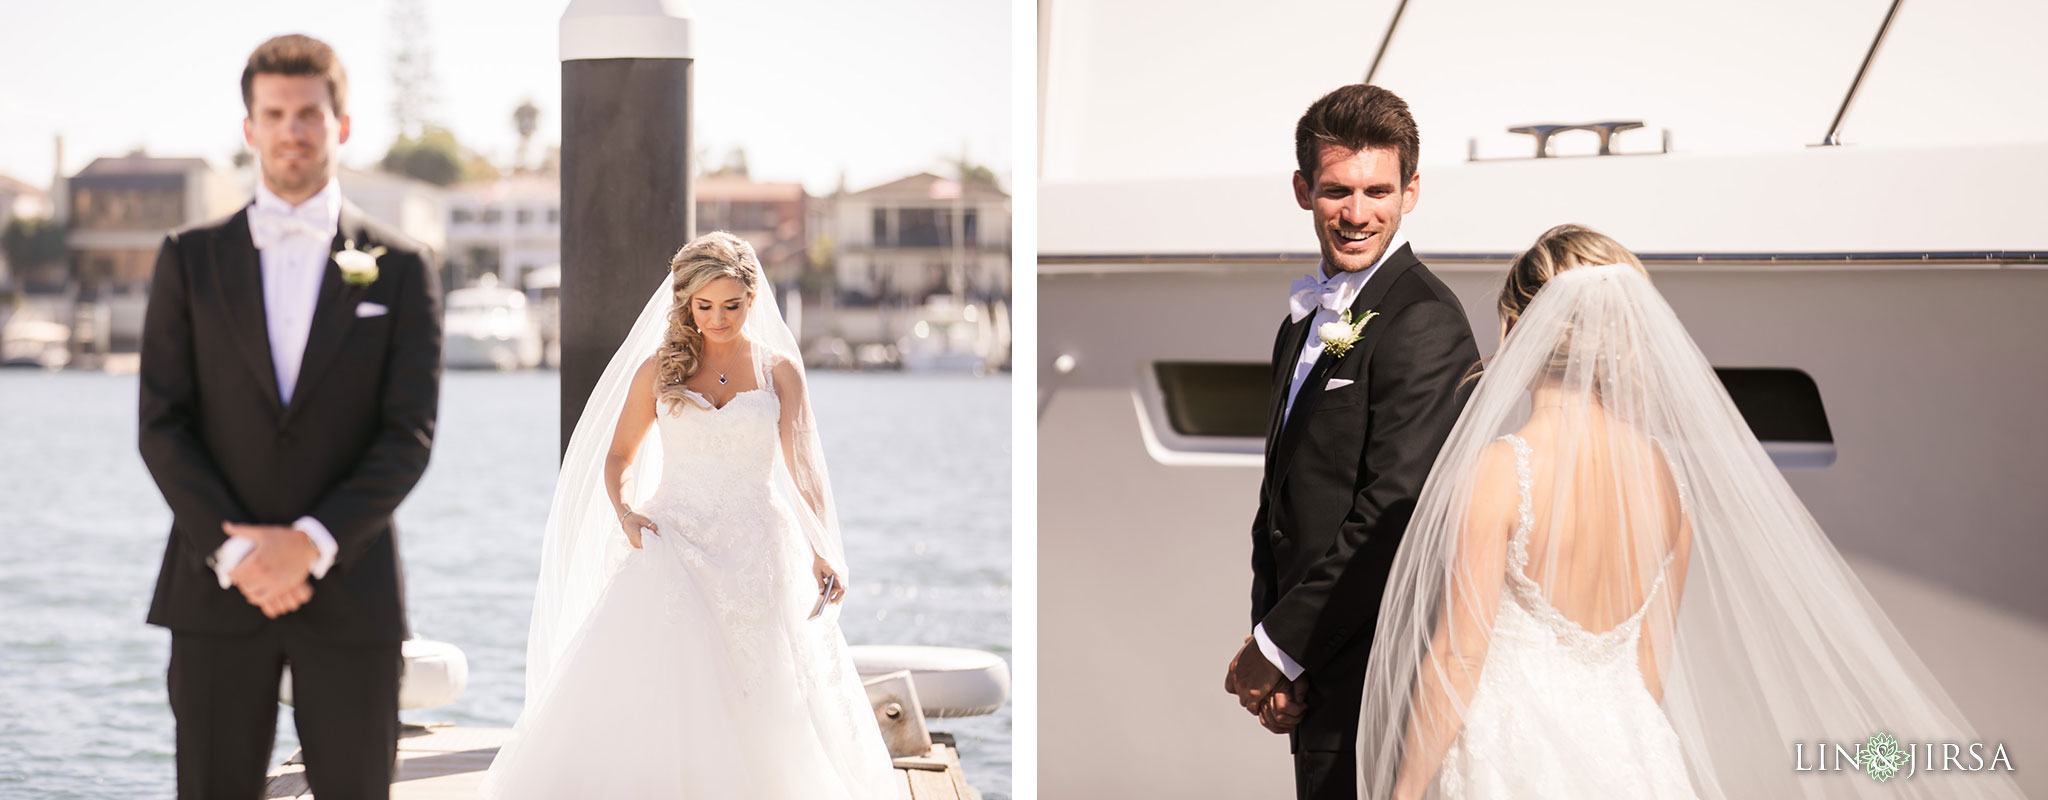 13 balboa bay wedding newport photography